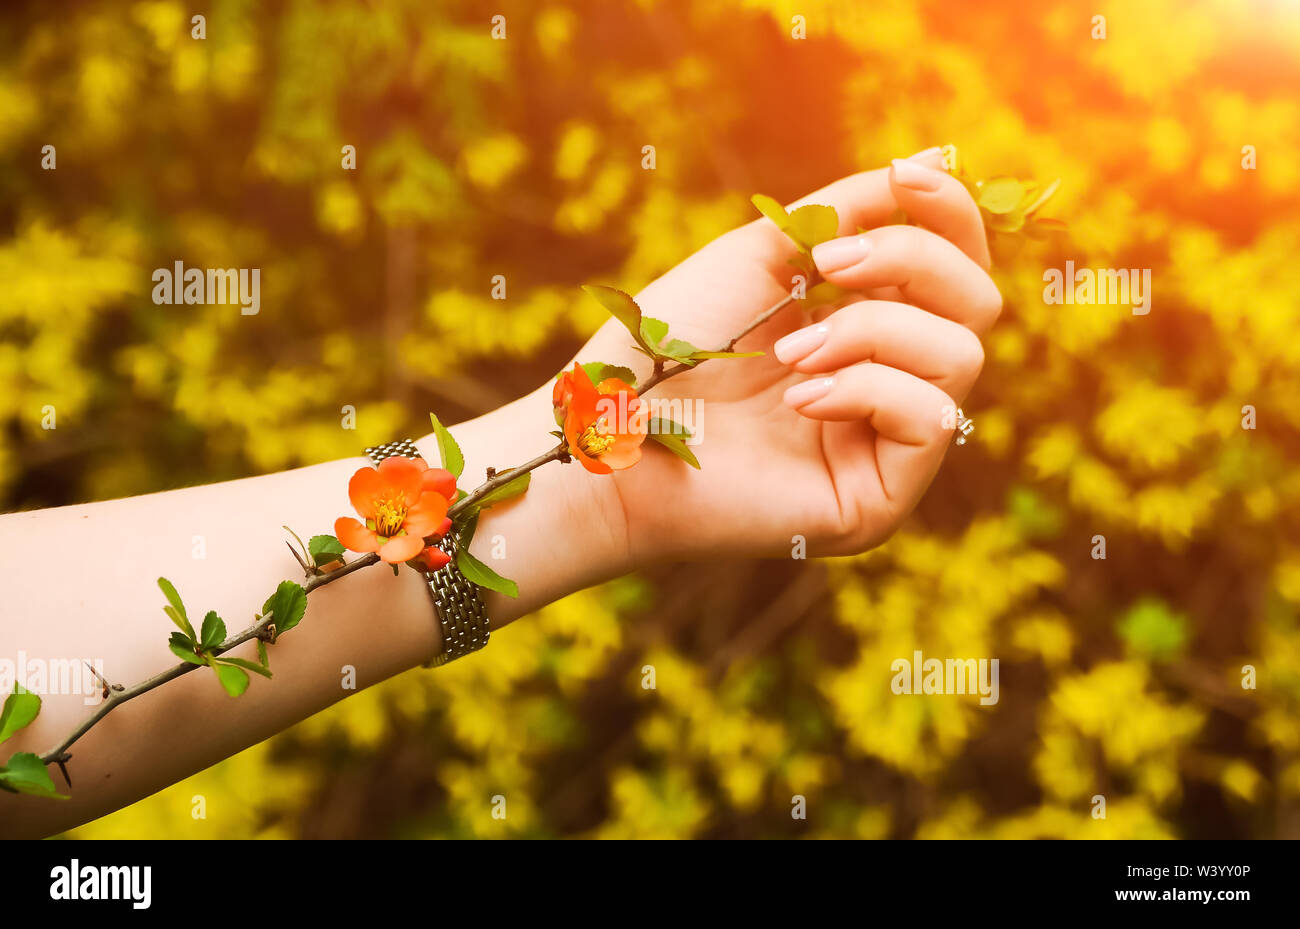 Blume mit den Dornen lag auf der Hand mit Sonnenuntergang bacground. Honig Bild, geschossen zu schließen. Rote Blumen. Unerwiderte Liebe. Natur Mode Stockfoto